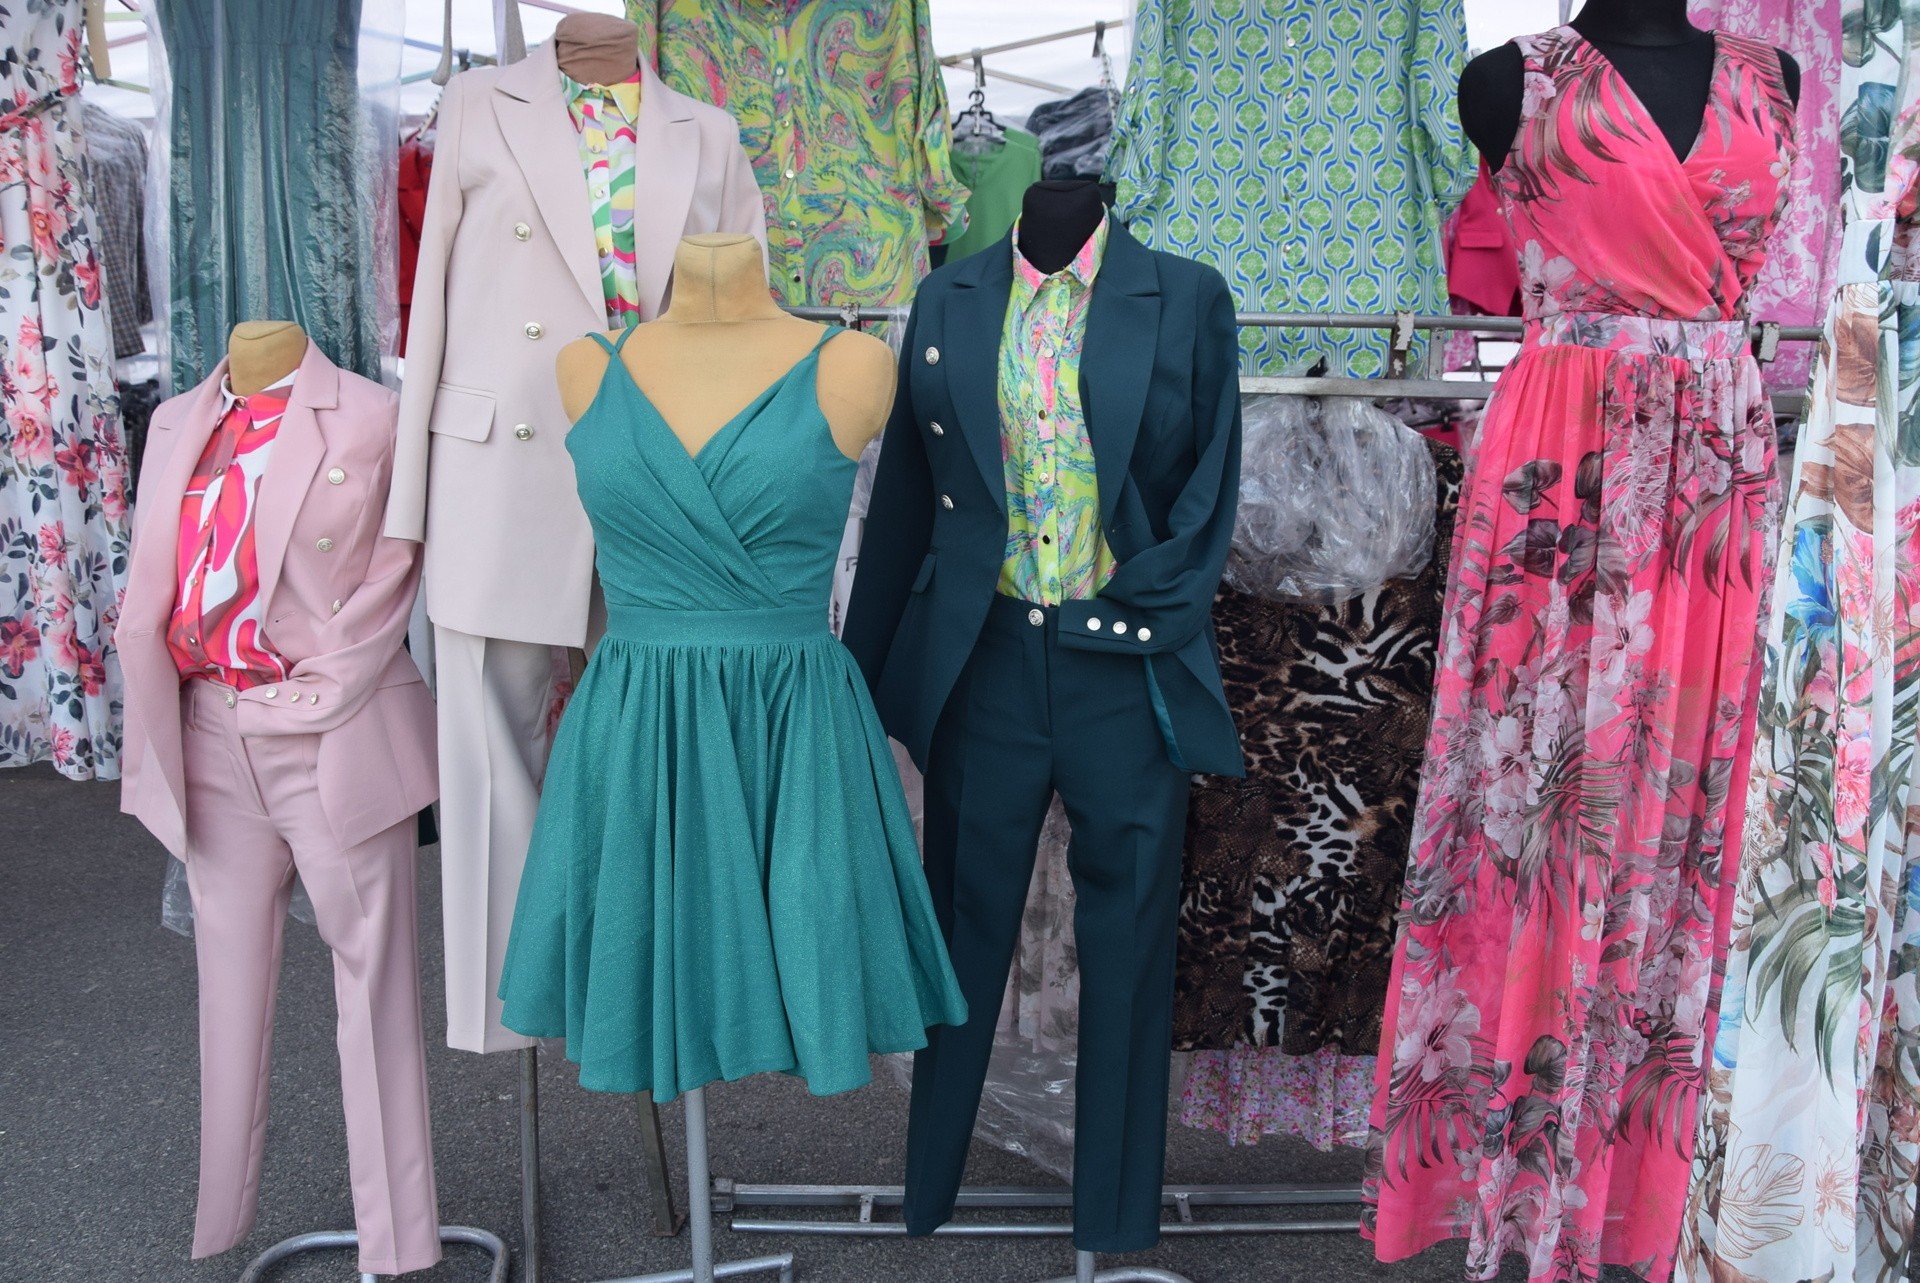 Kolorowe sukienki, modne żakiety. Tanie letnie ubrania na targowisku przy  Dworaka w Rzeszowie. Ceny zaczynają się od kilku złotych [ZDJĘCIA] | Nowiny